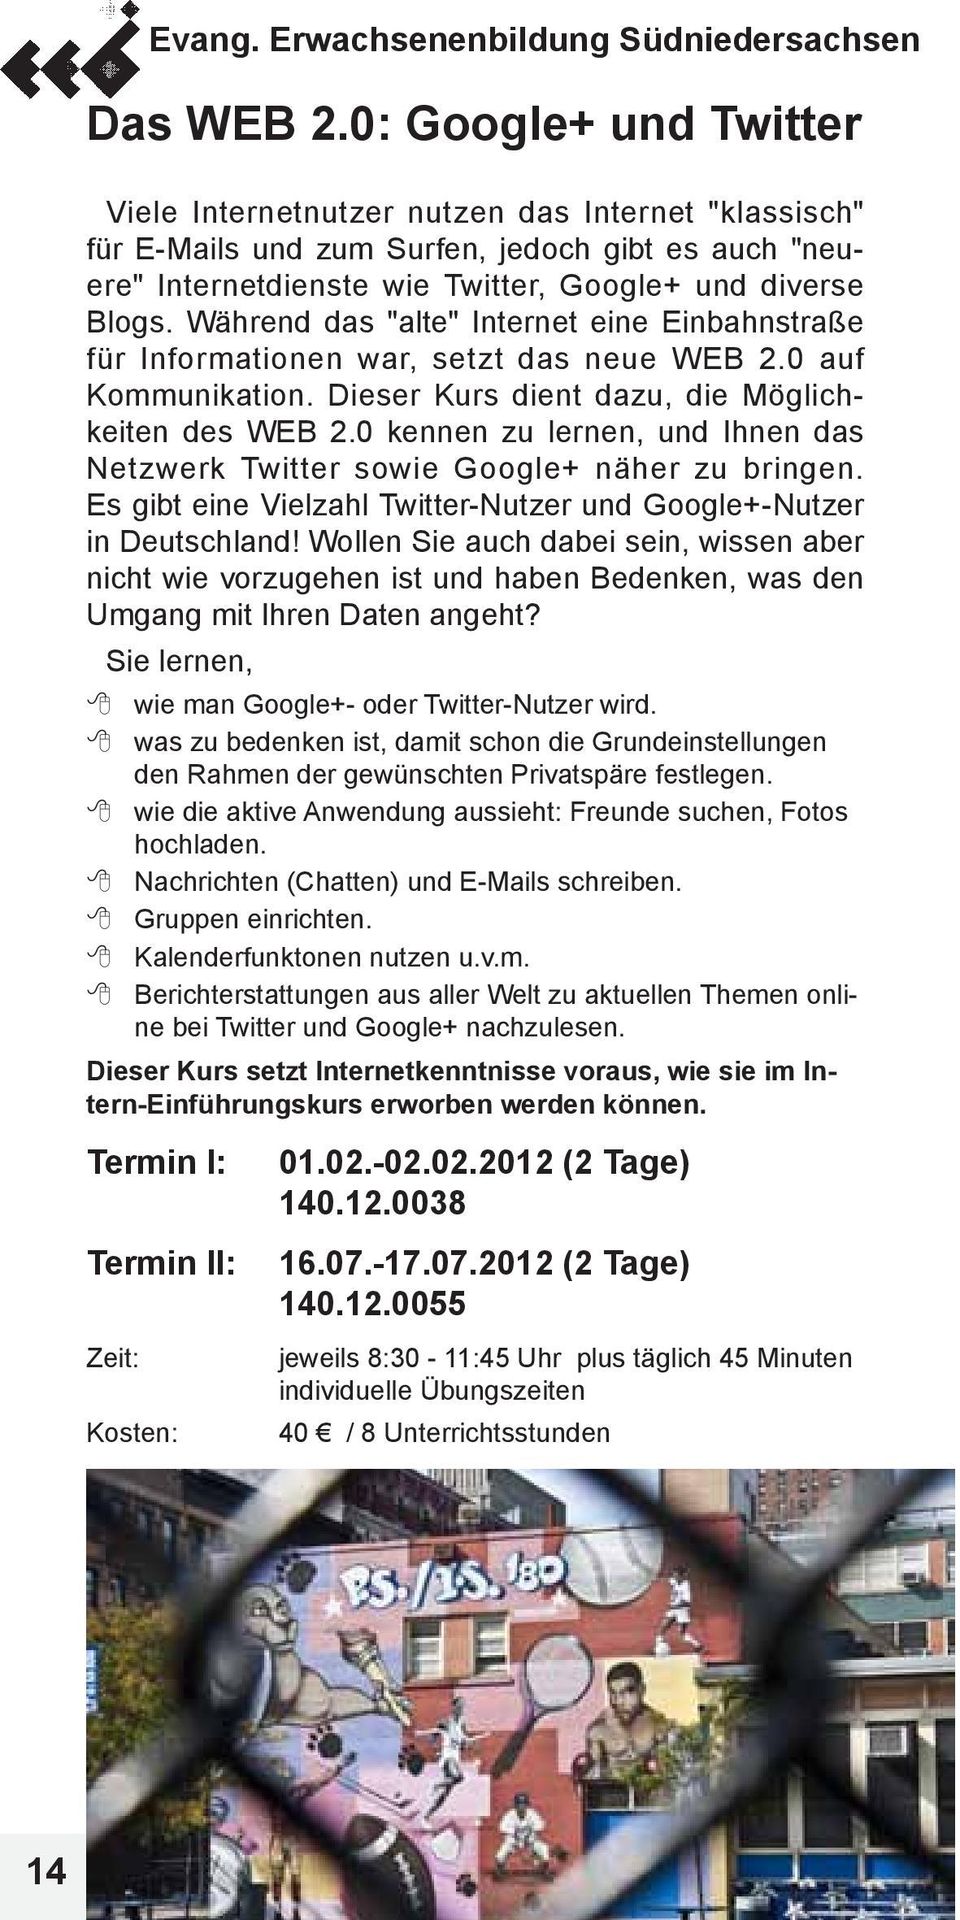 0 kennen zu lernen, und Ihnen das Netzwerk Twitter sowie Google+ näher zu bringen. Es gibt eine Vielzahl Twitter-Nutzer und Google+-Nutzer in Deutschland!